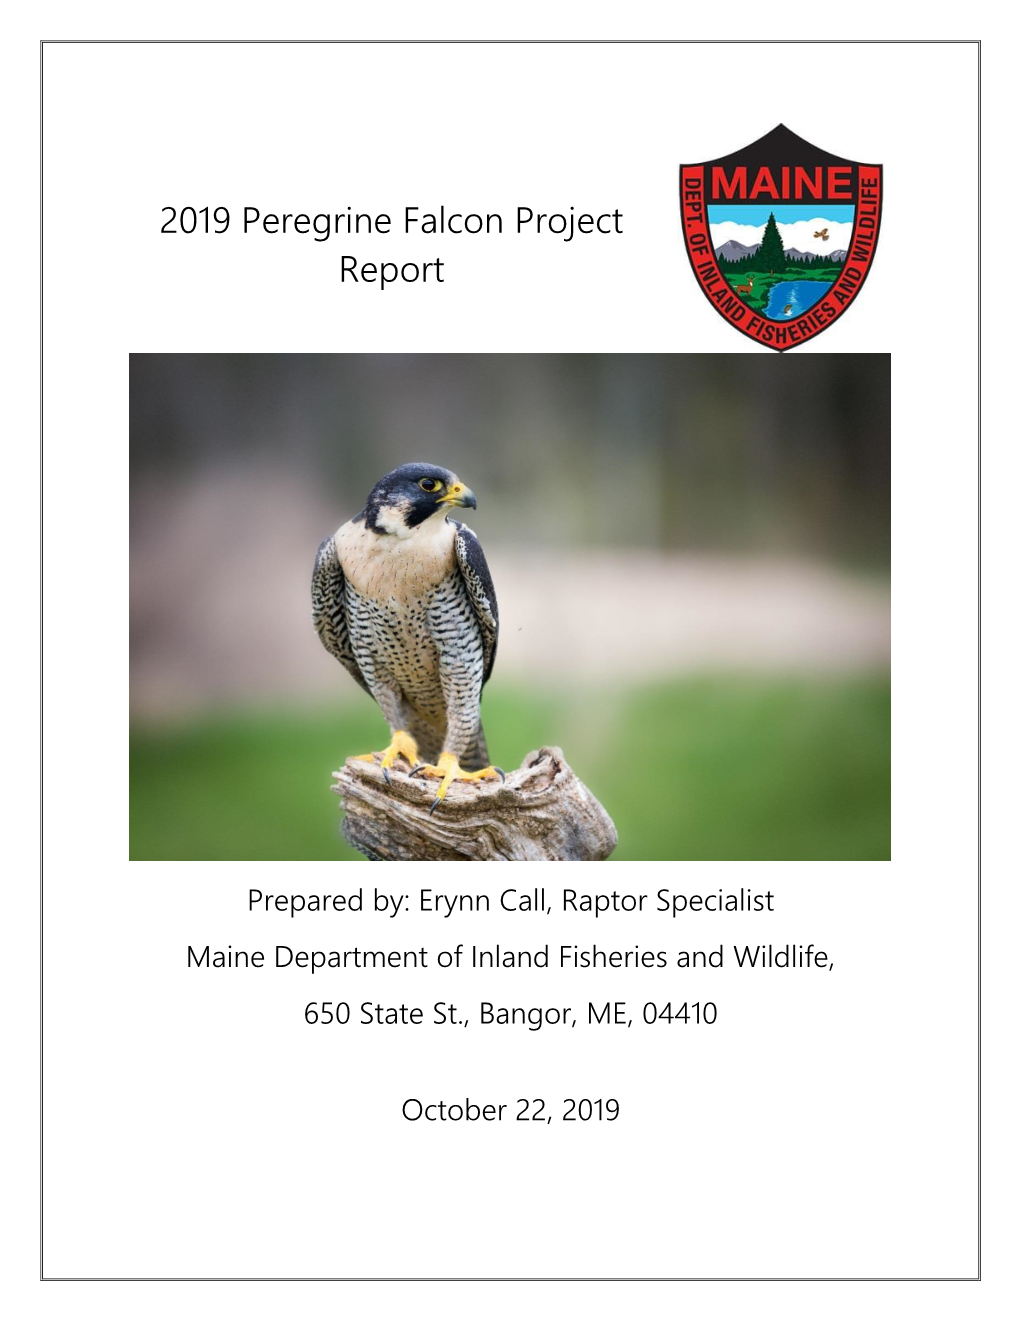 2019 Peregrine Falcon Project Report